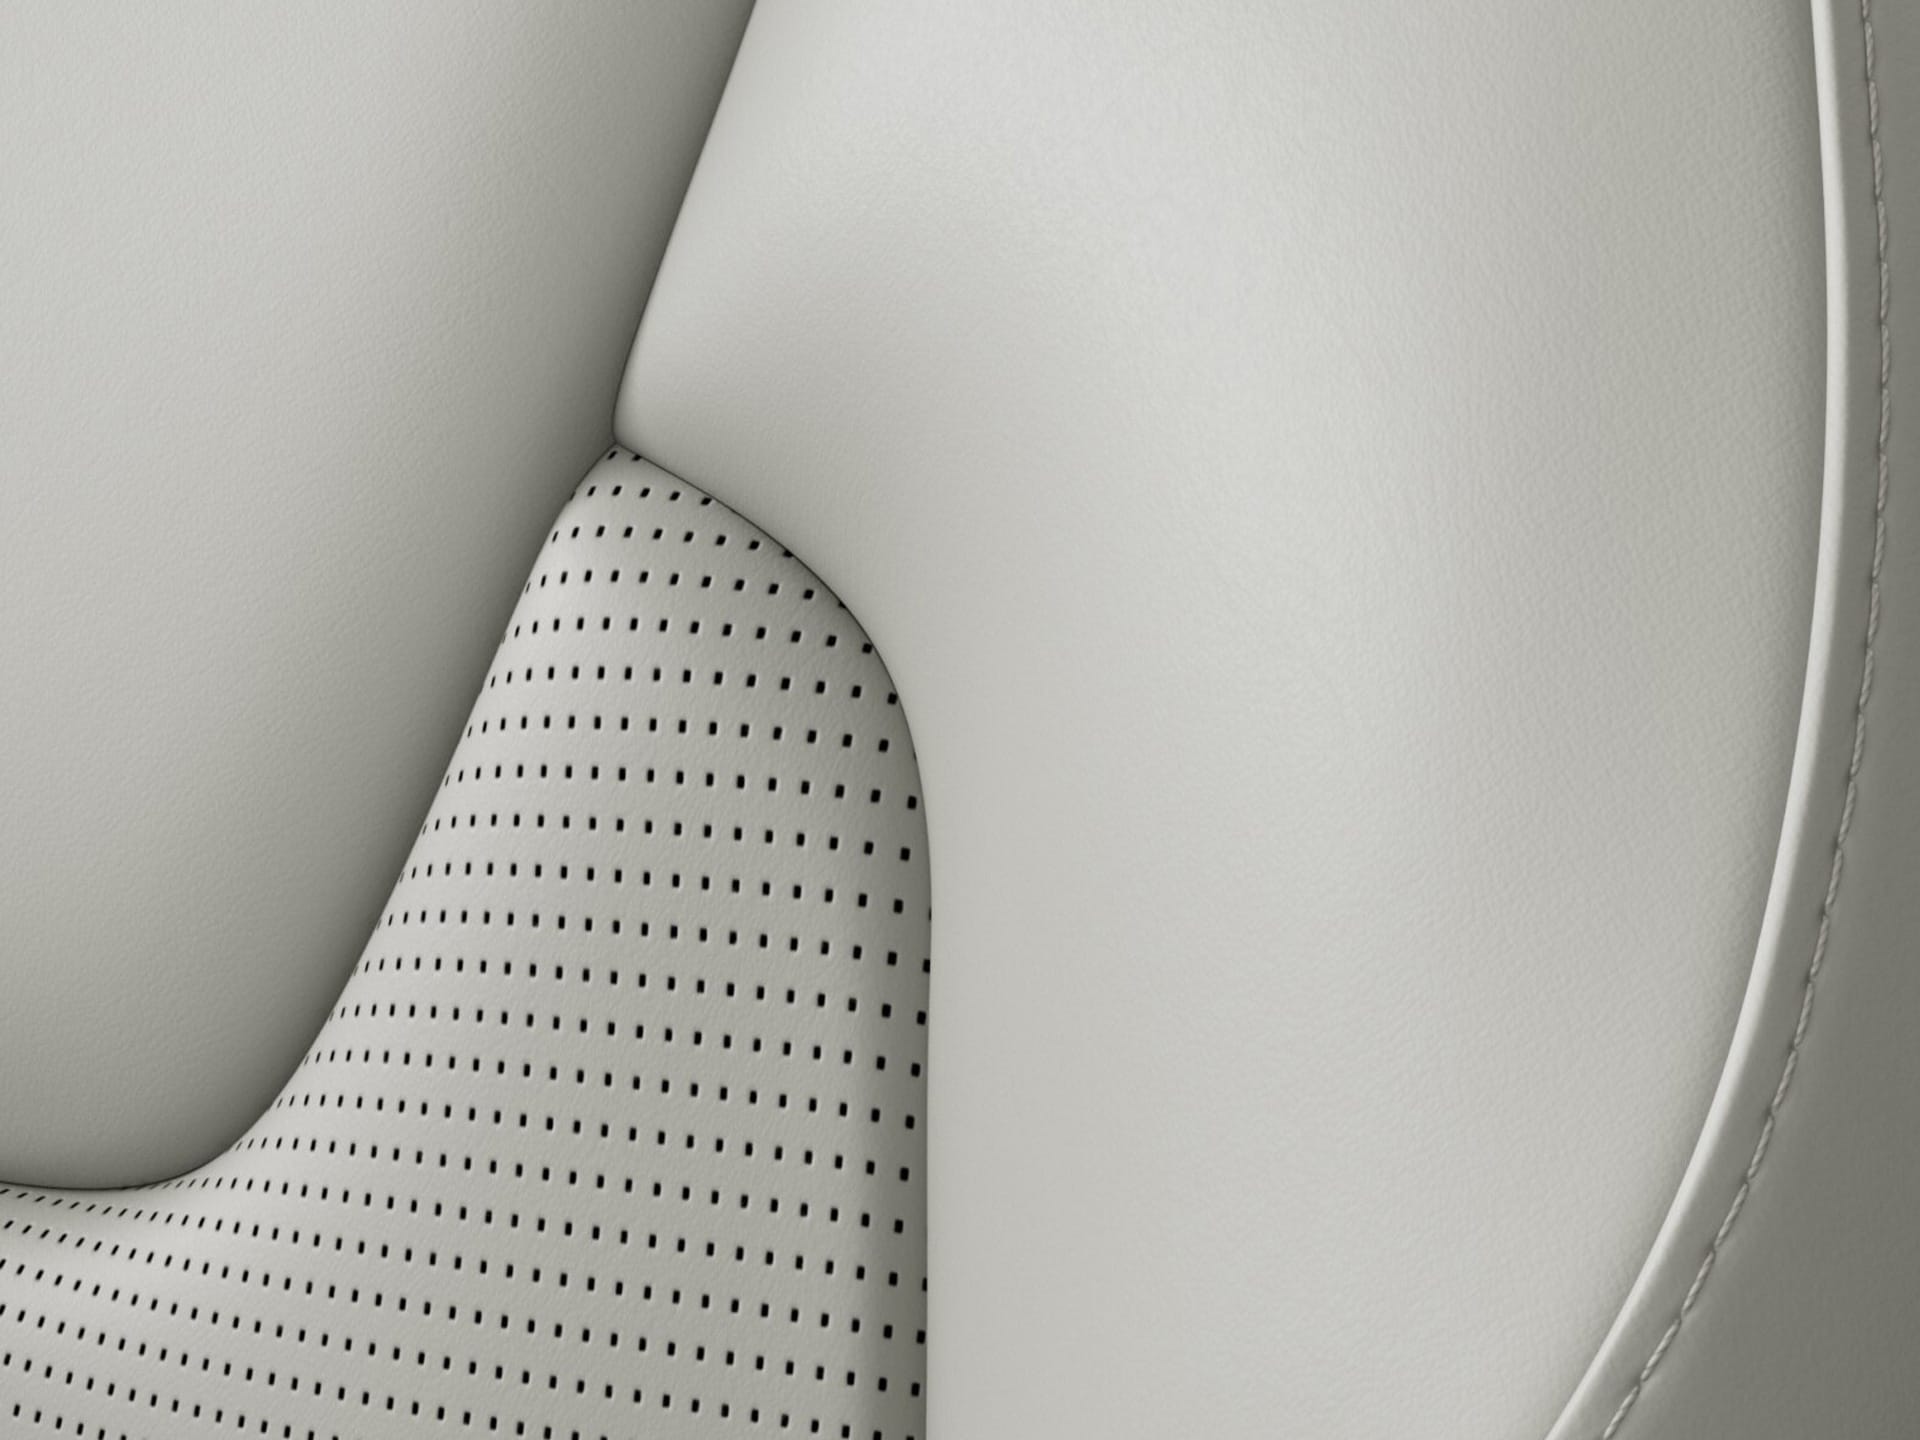 المقاعد الأمامية من جلد النابا في فولفو XC60 الرياضية متعددة الاستخدامات.